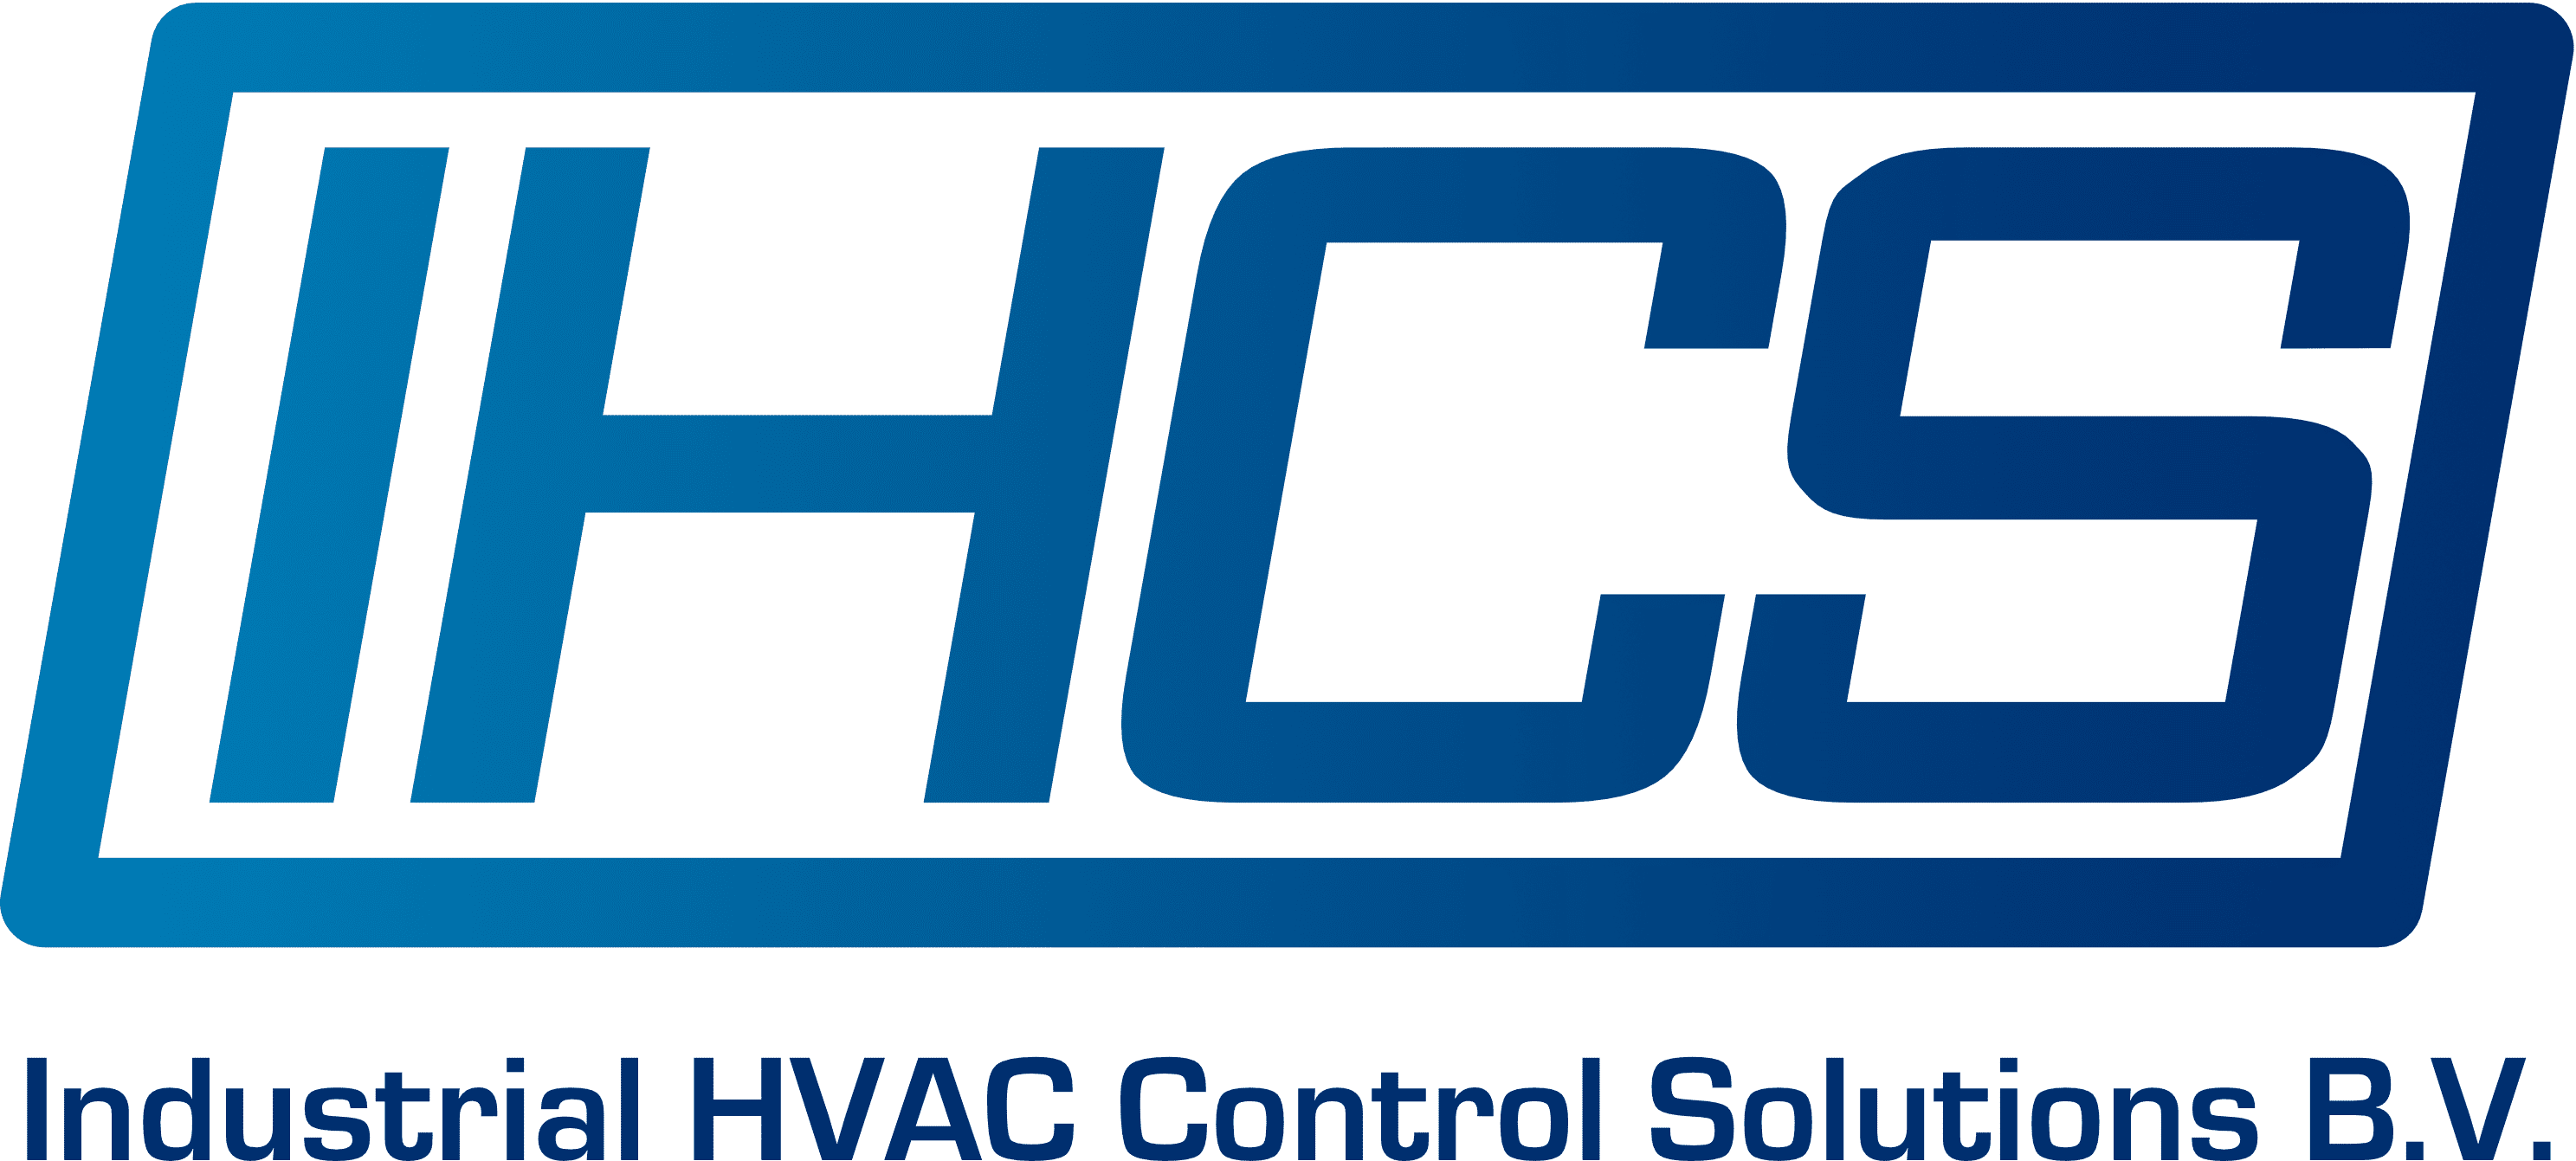 IHCS_logo_CMYK